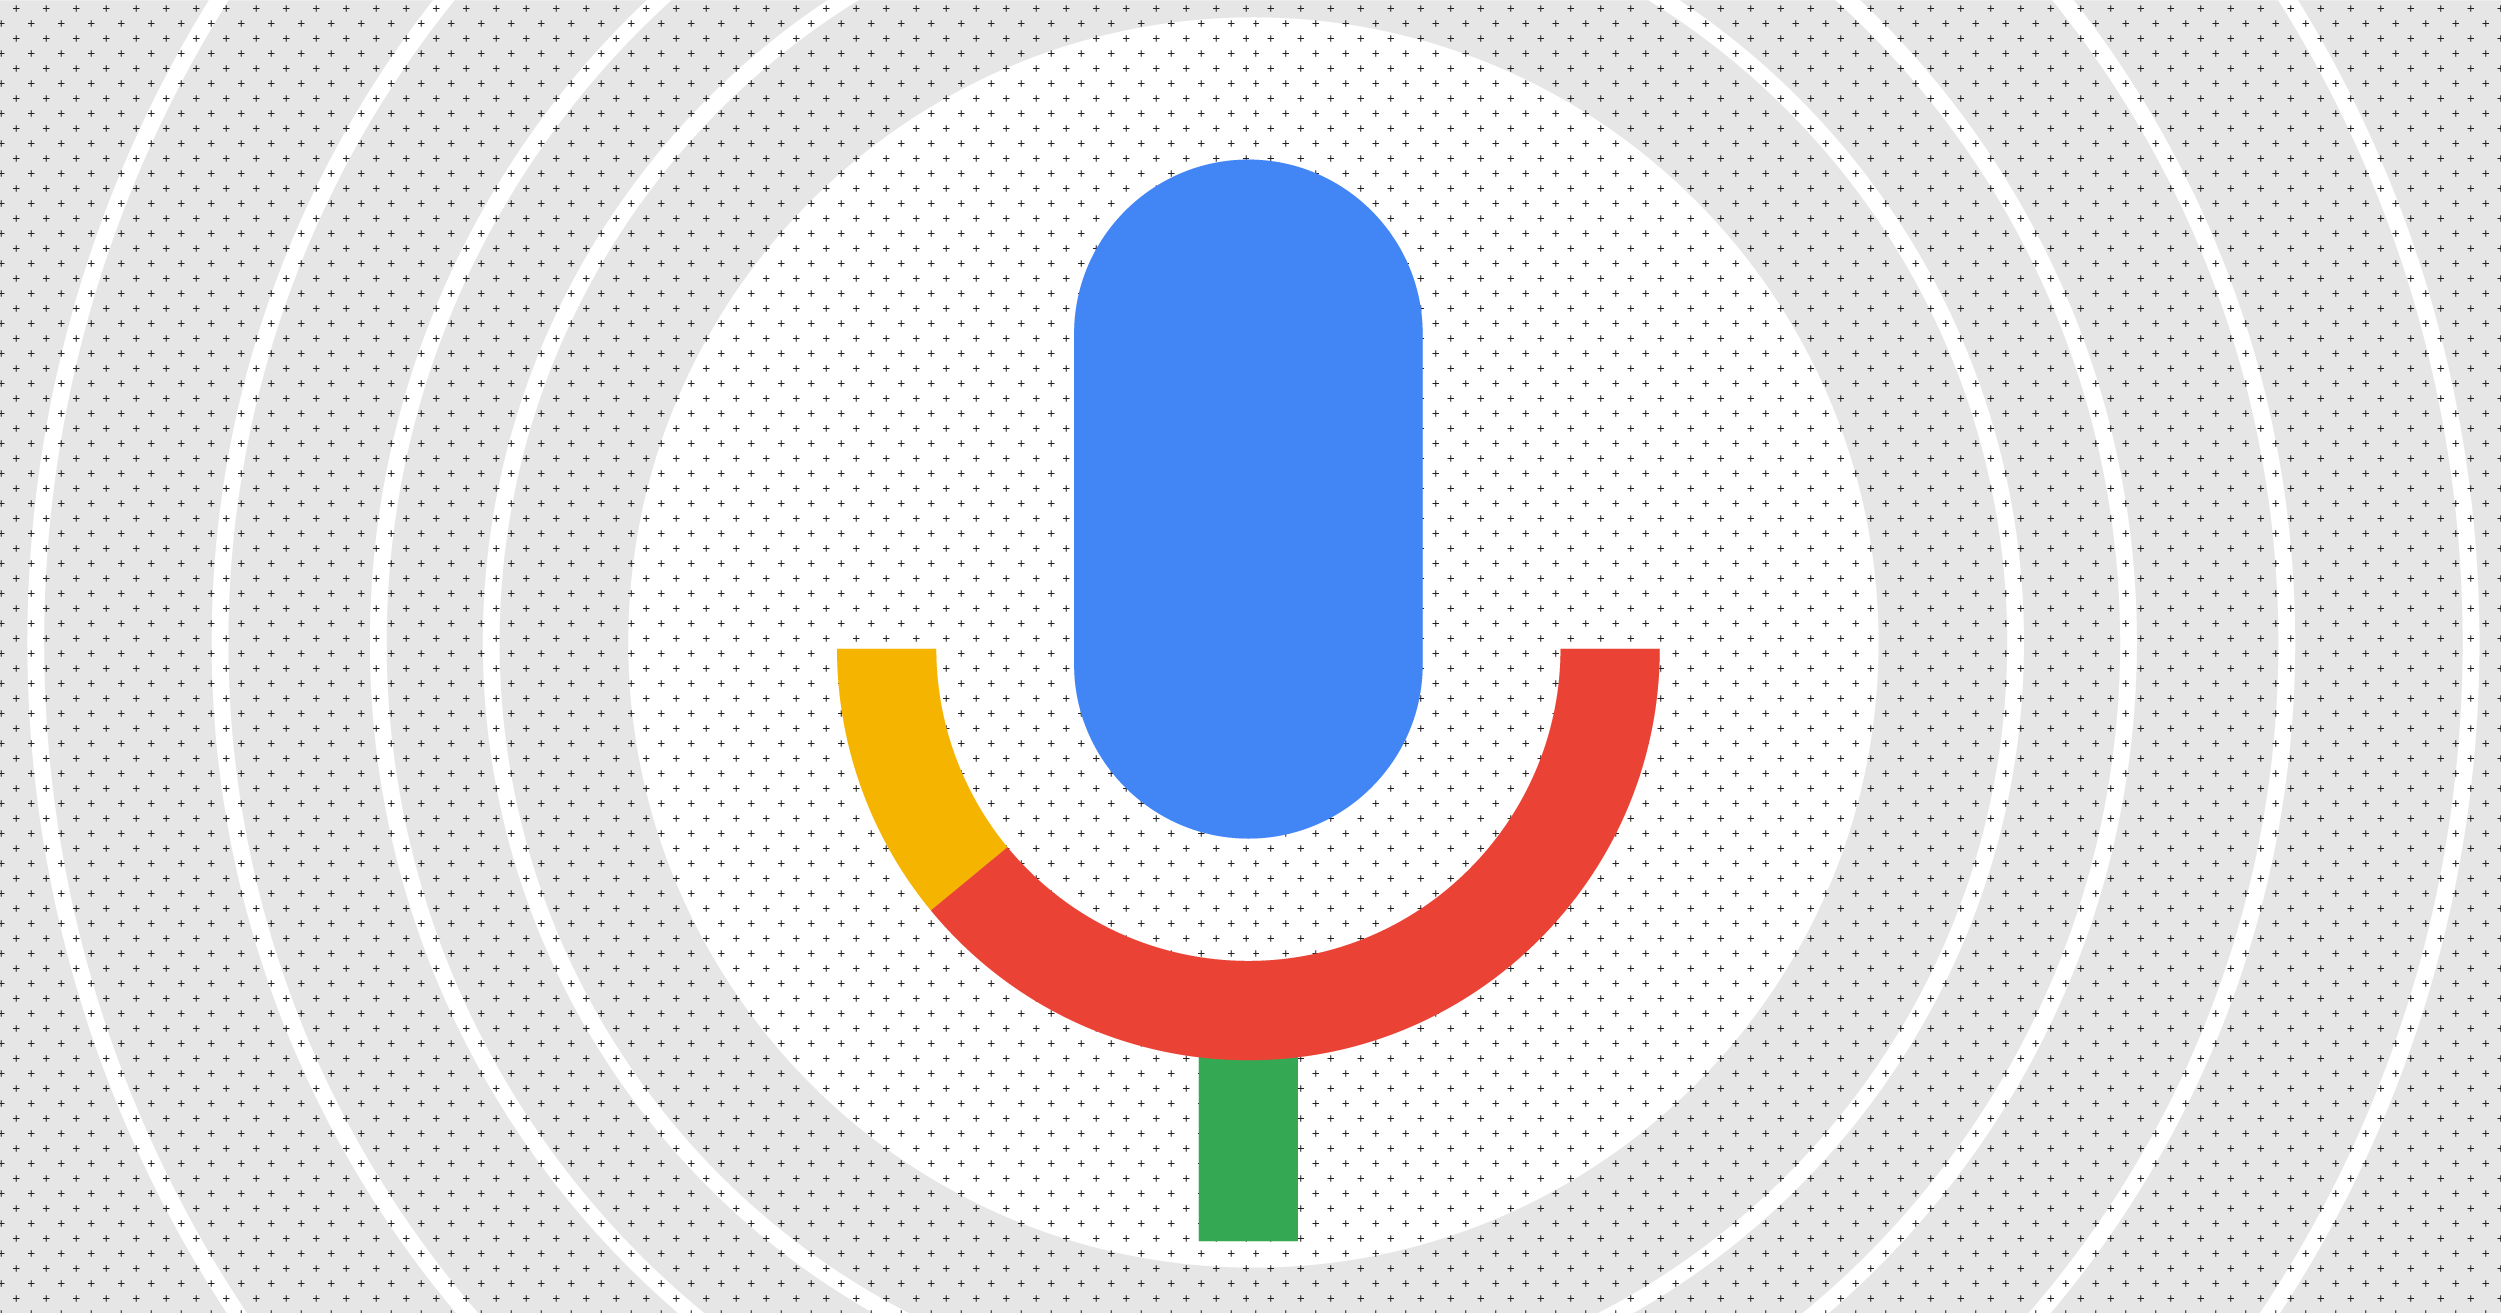 Google'da Sesli Aramalar ve Geleceği